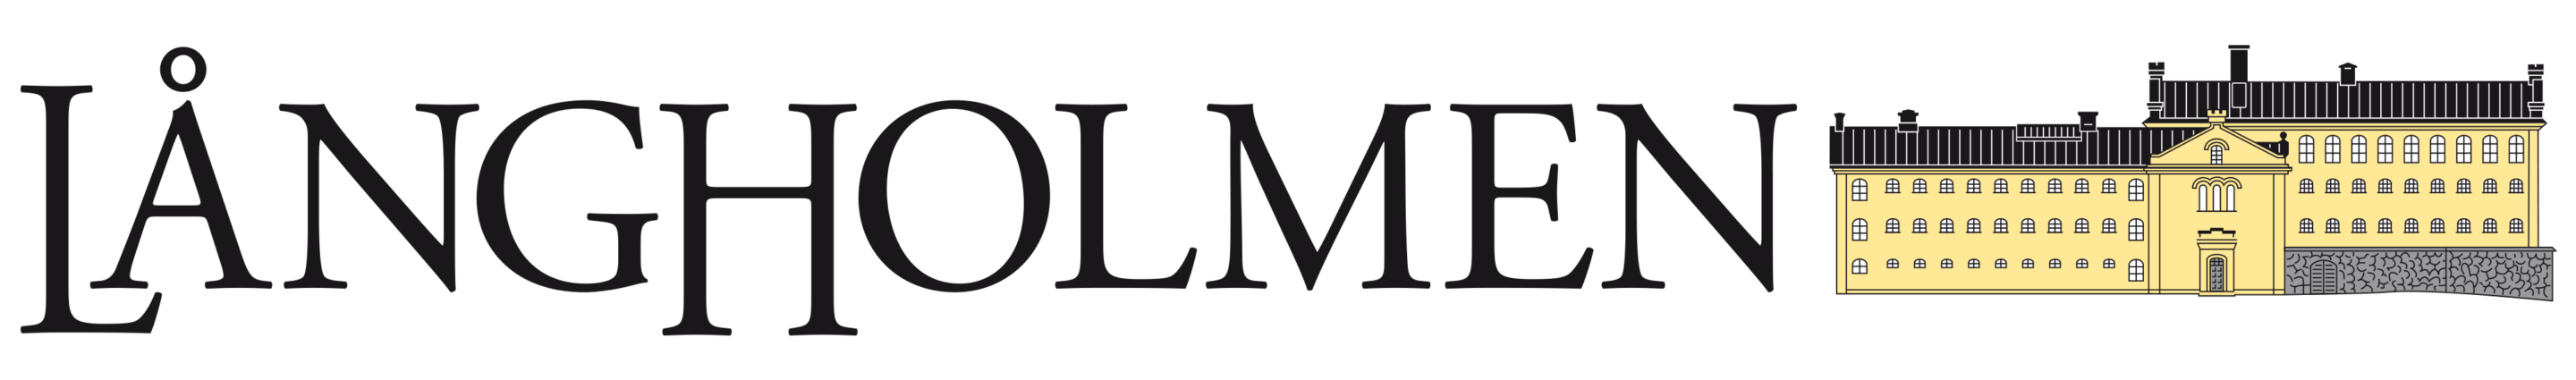 Långholmen logo